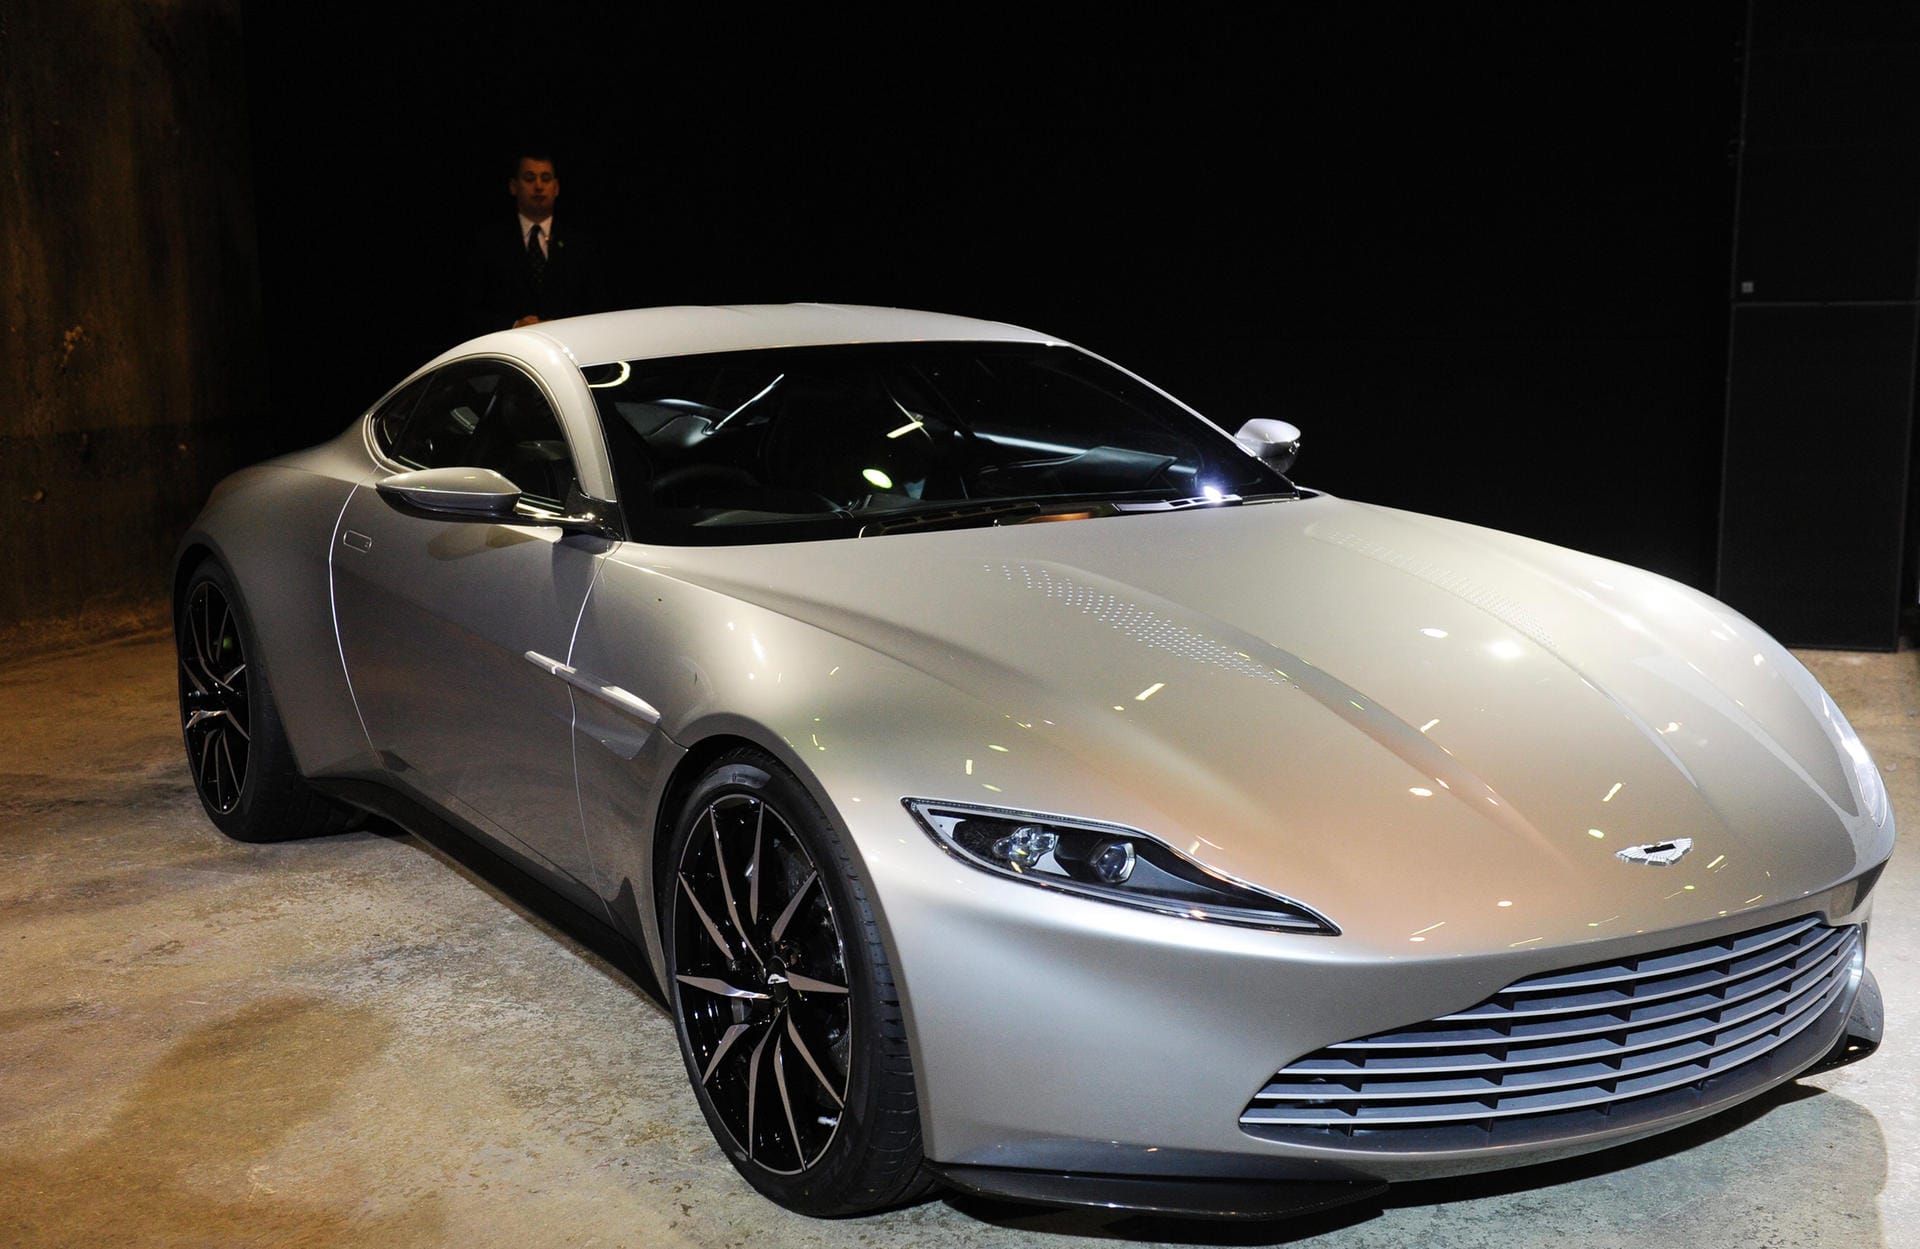 Wie viel ist ein Auto wert, das für den berühmtesten Agenten der Welt gebaut wurde? 3,1 Millionen Euro, entschied ein James-Bond-Fan in London, und gab damit das höchste Gebot im Londoner Auktionshaus Christie's ab.